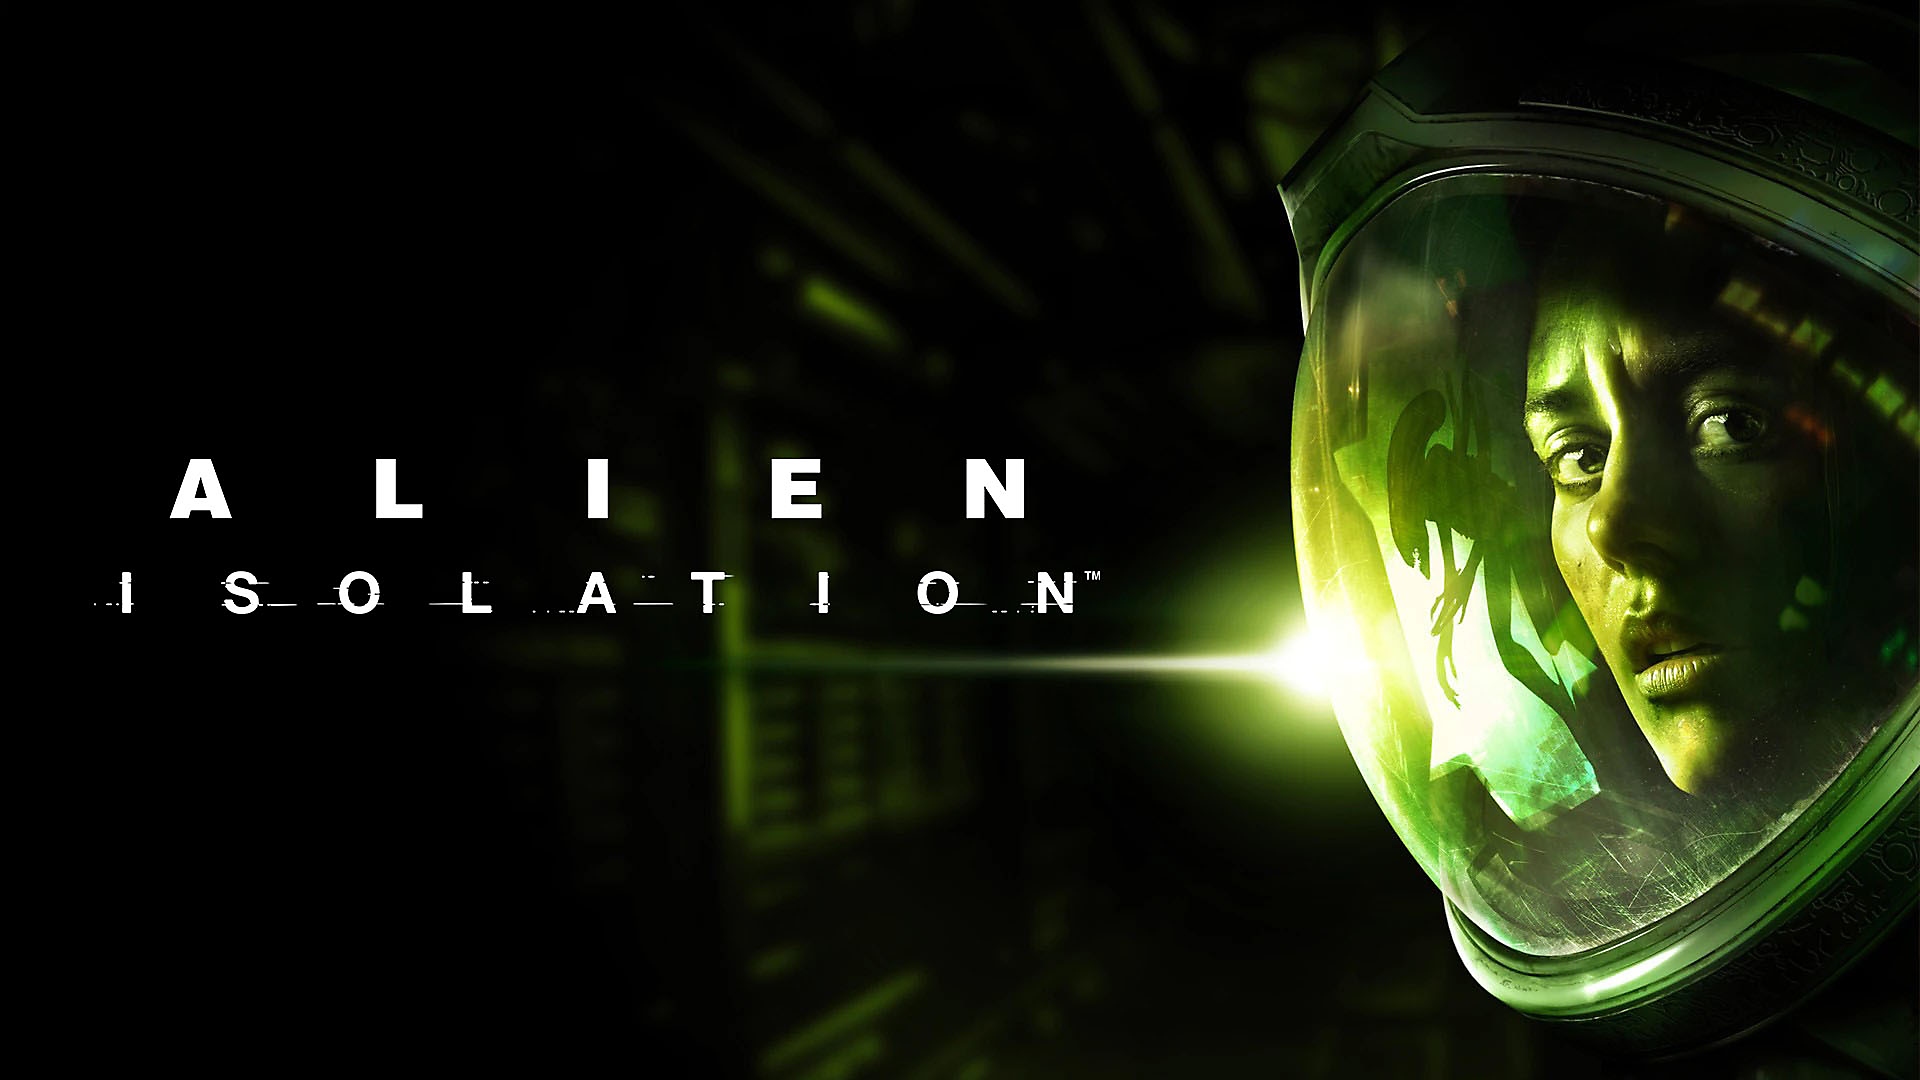 Amanda avaruuspuvussa, kun Alien heijastuu hänen visiiristään pelissä Alien Isolation